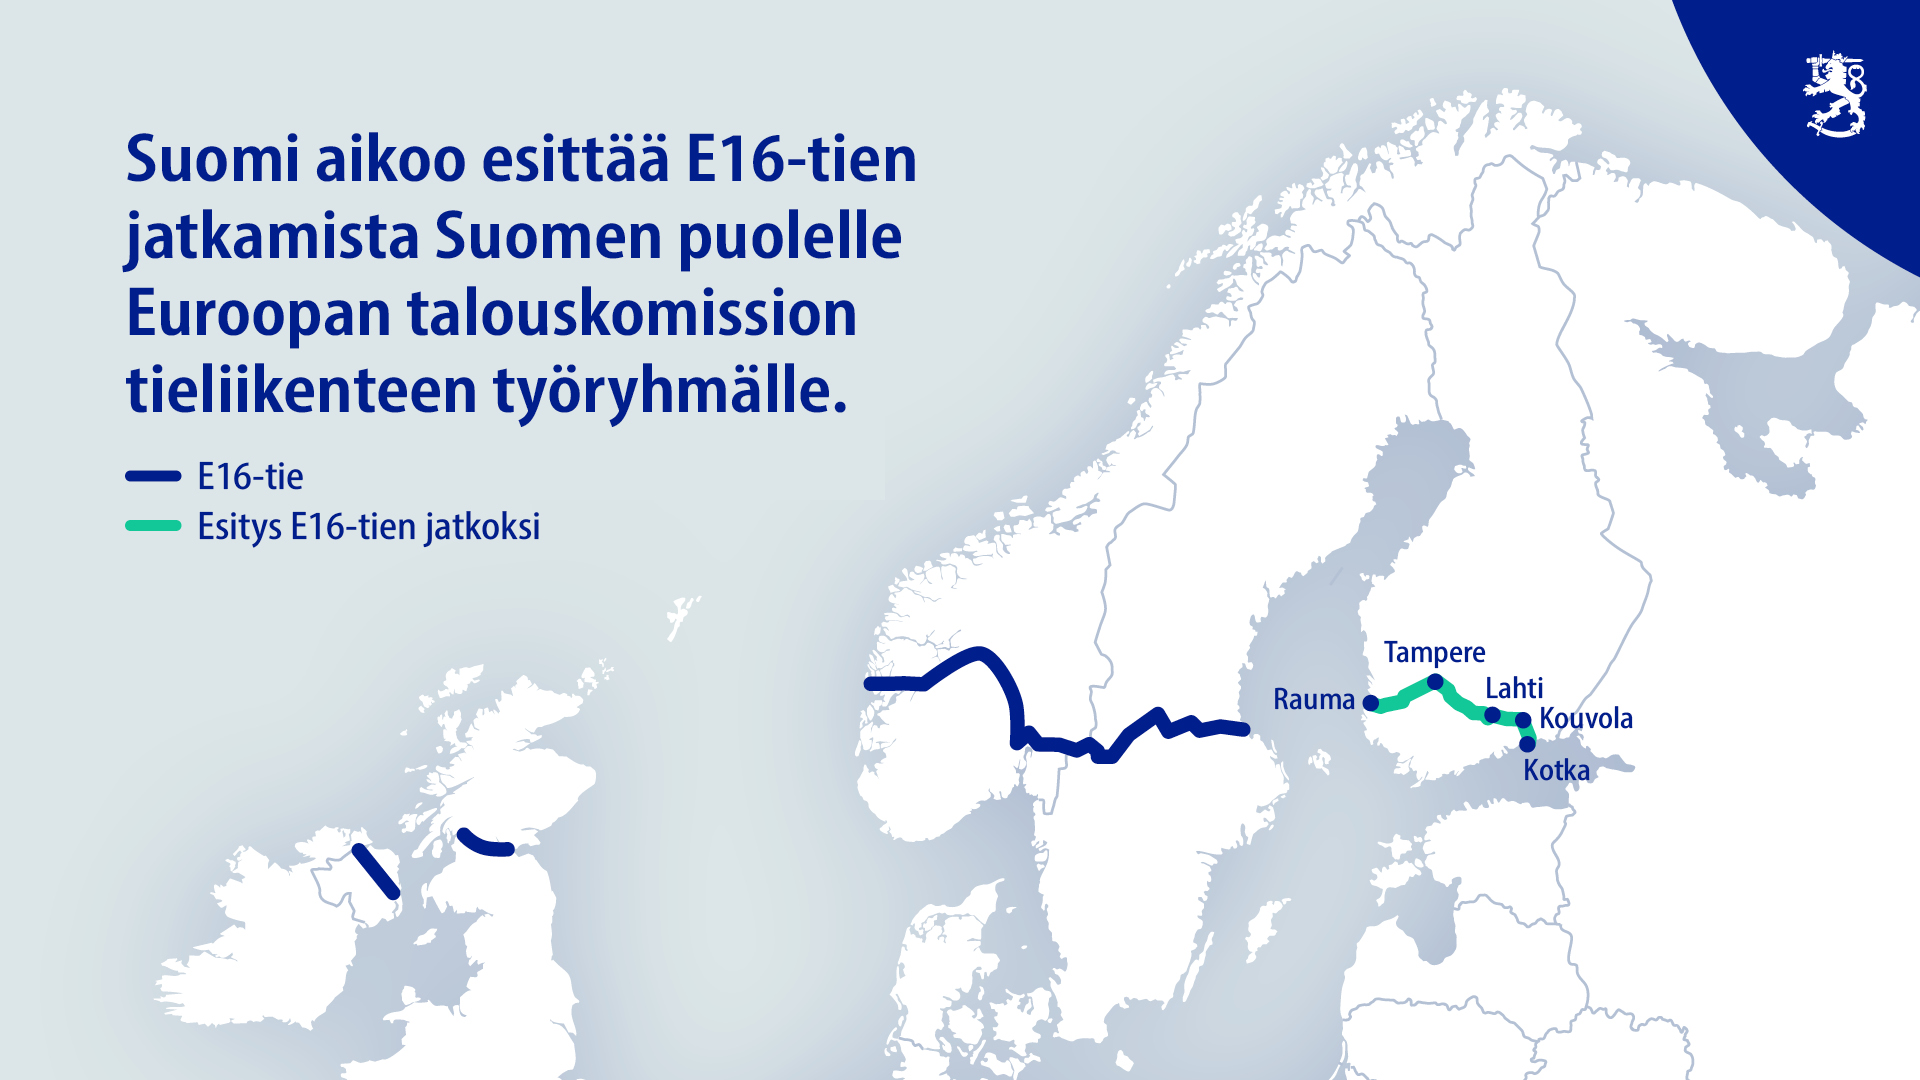 Nykyinen E16-tie ja Suomen puolelle suunniteltu jatke, jota Suomi aikoo esittää. (Kuva: LVM)